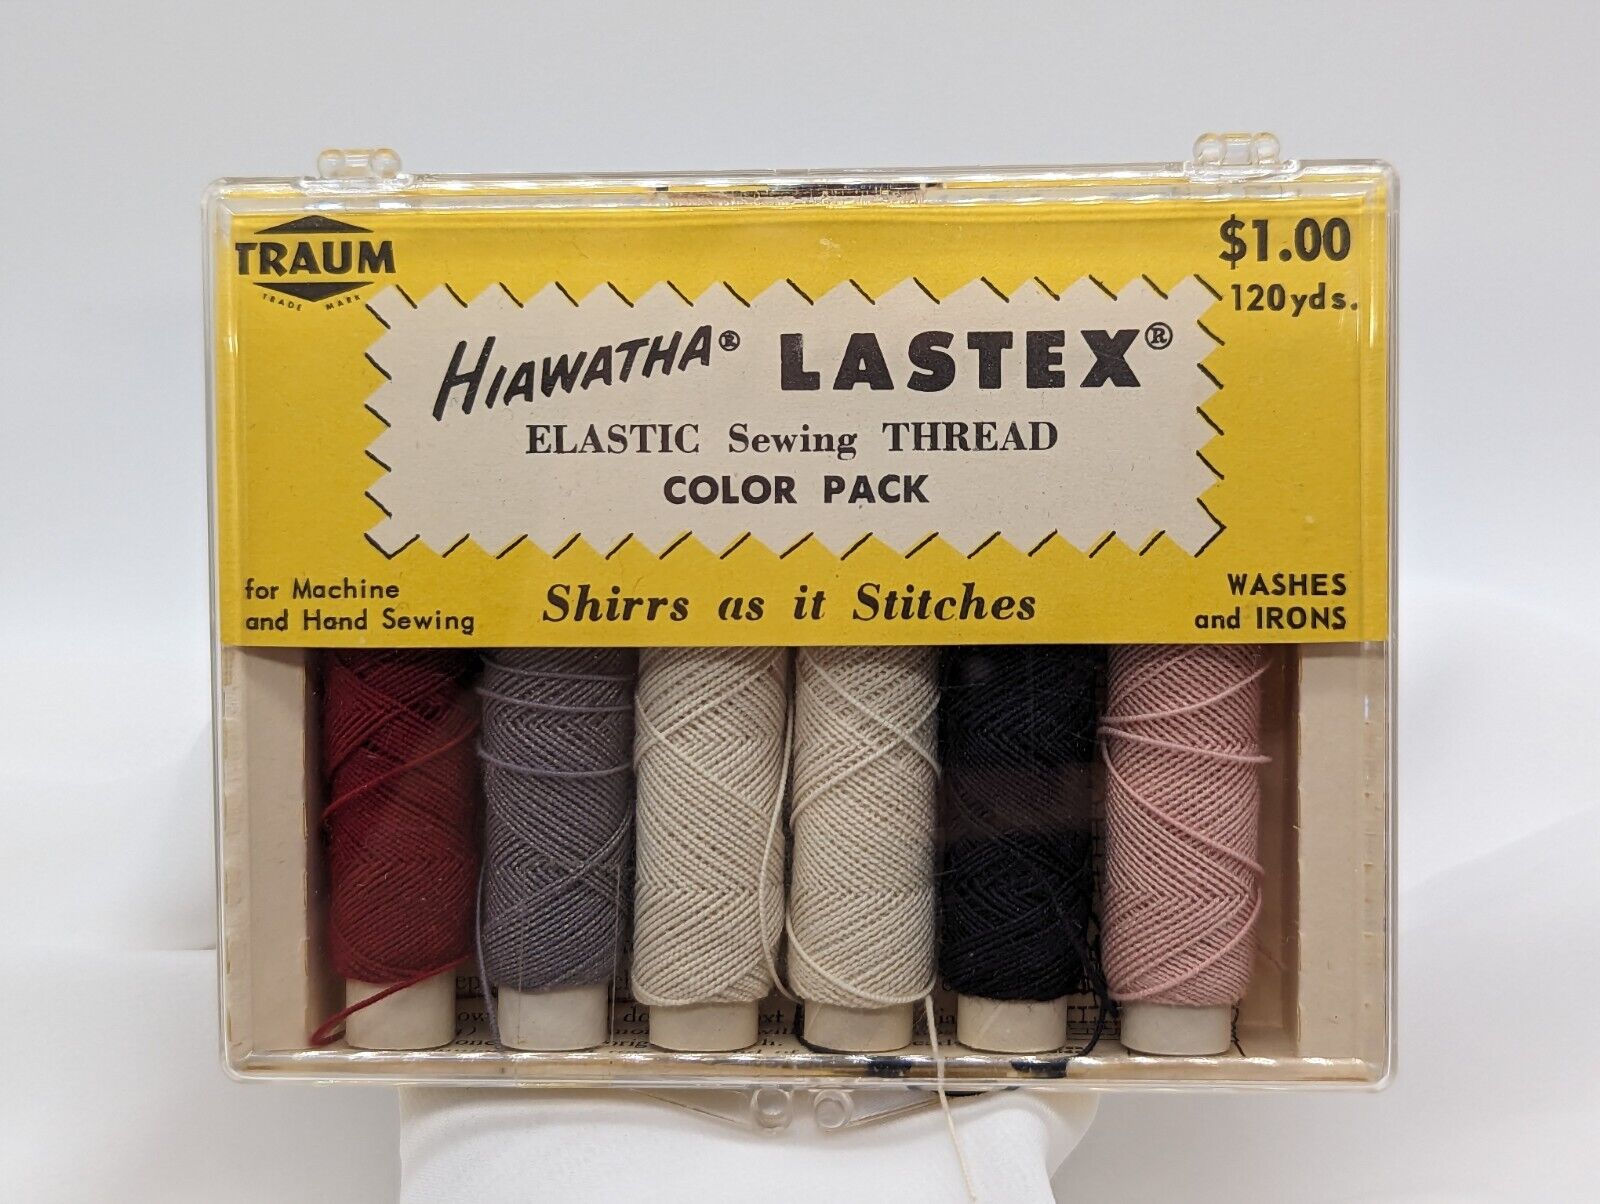 David Traum Hiawatha Lastex Elastic Sewing Thread Vtg Kit W/6 Spools Display 